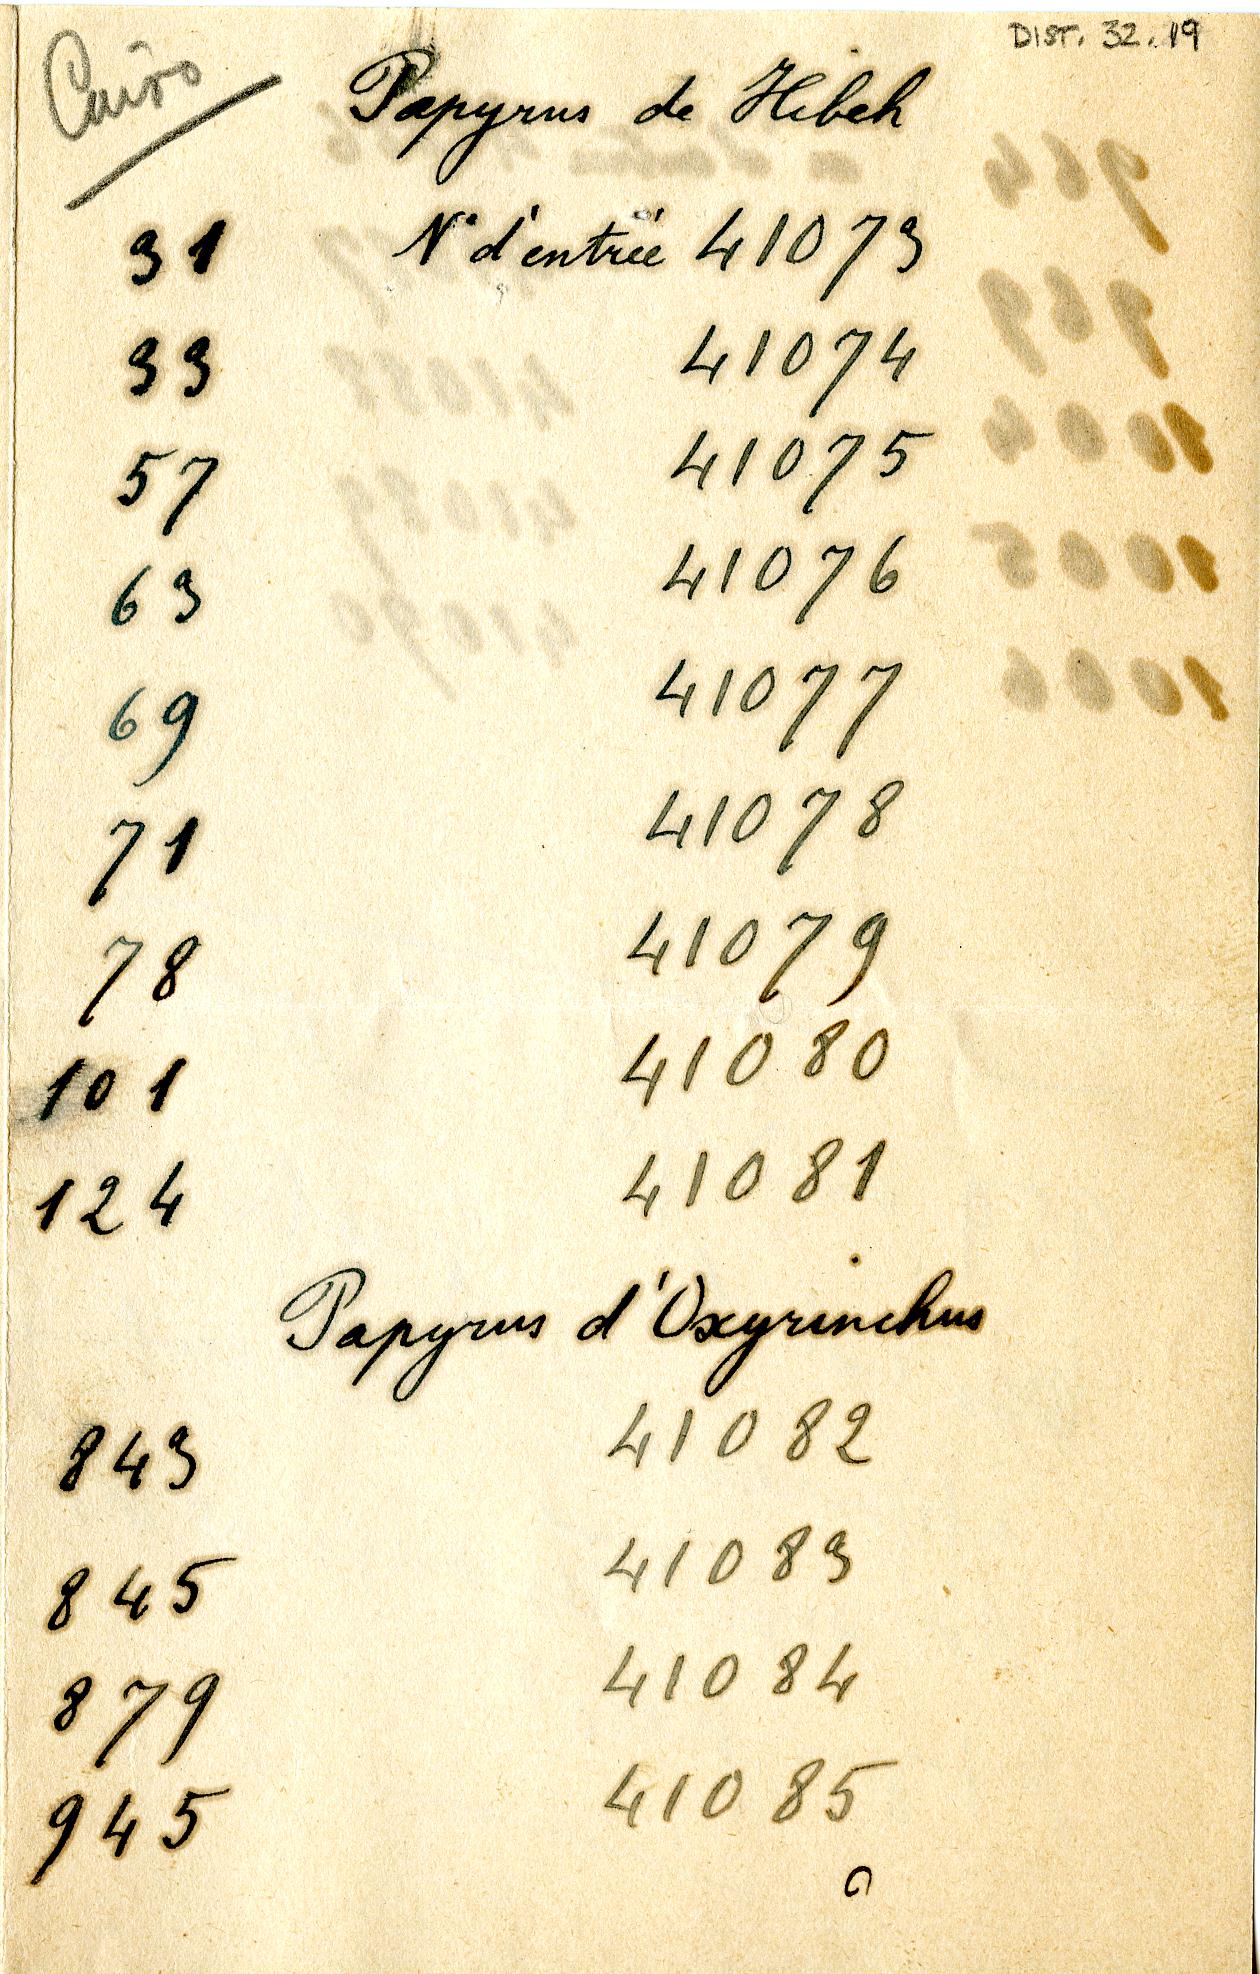 1908-13 Papyri DIST.32.19a